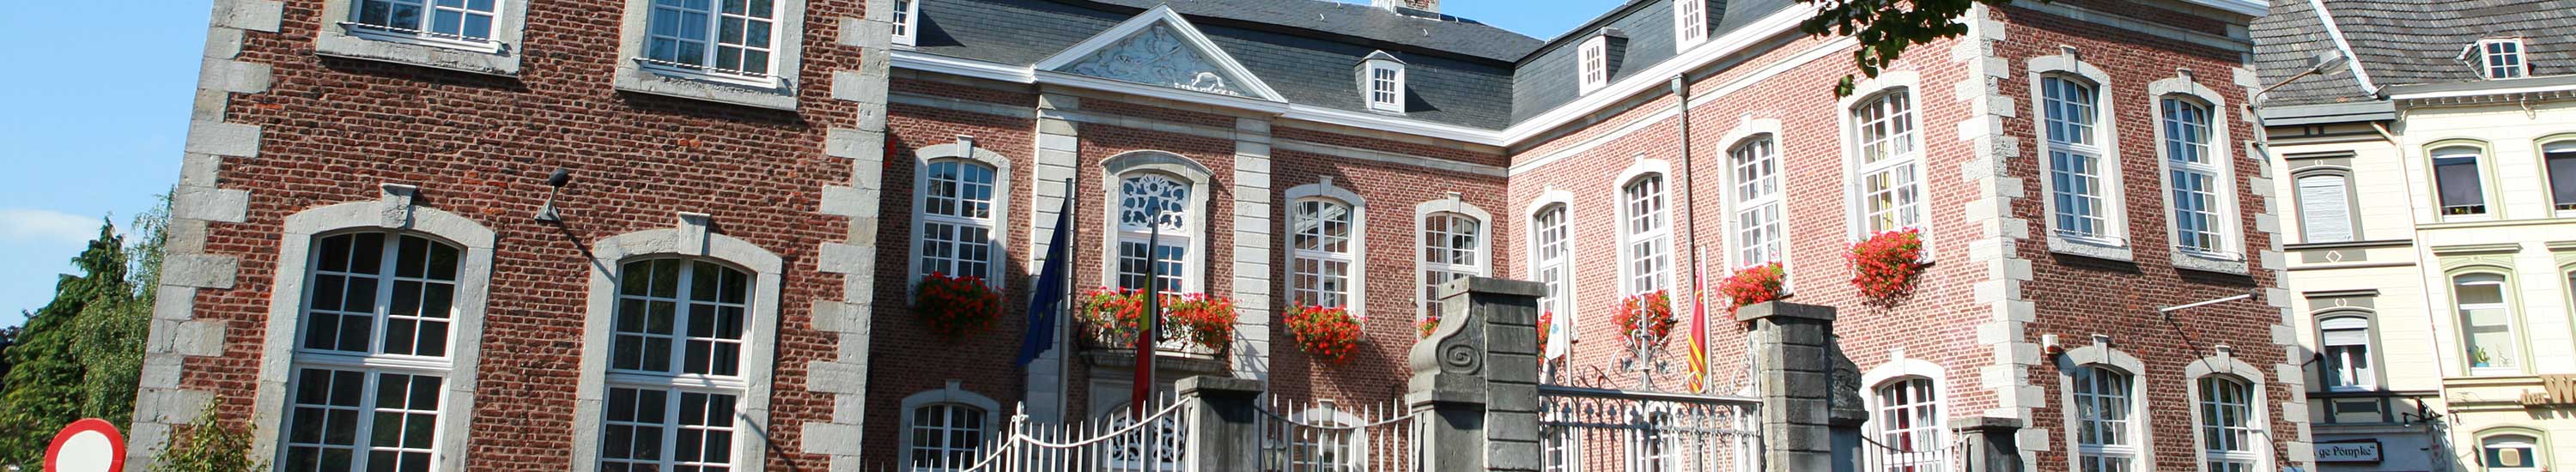 Günstige Haushaltsauflösungen, Betriebsauflösungen Wohnungsauflösungen in Diez Limburg